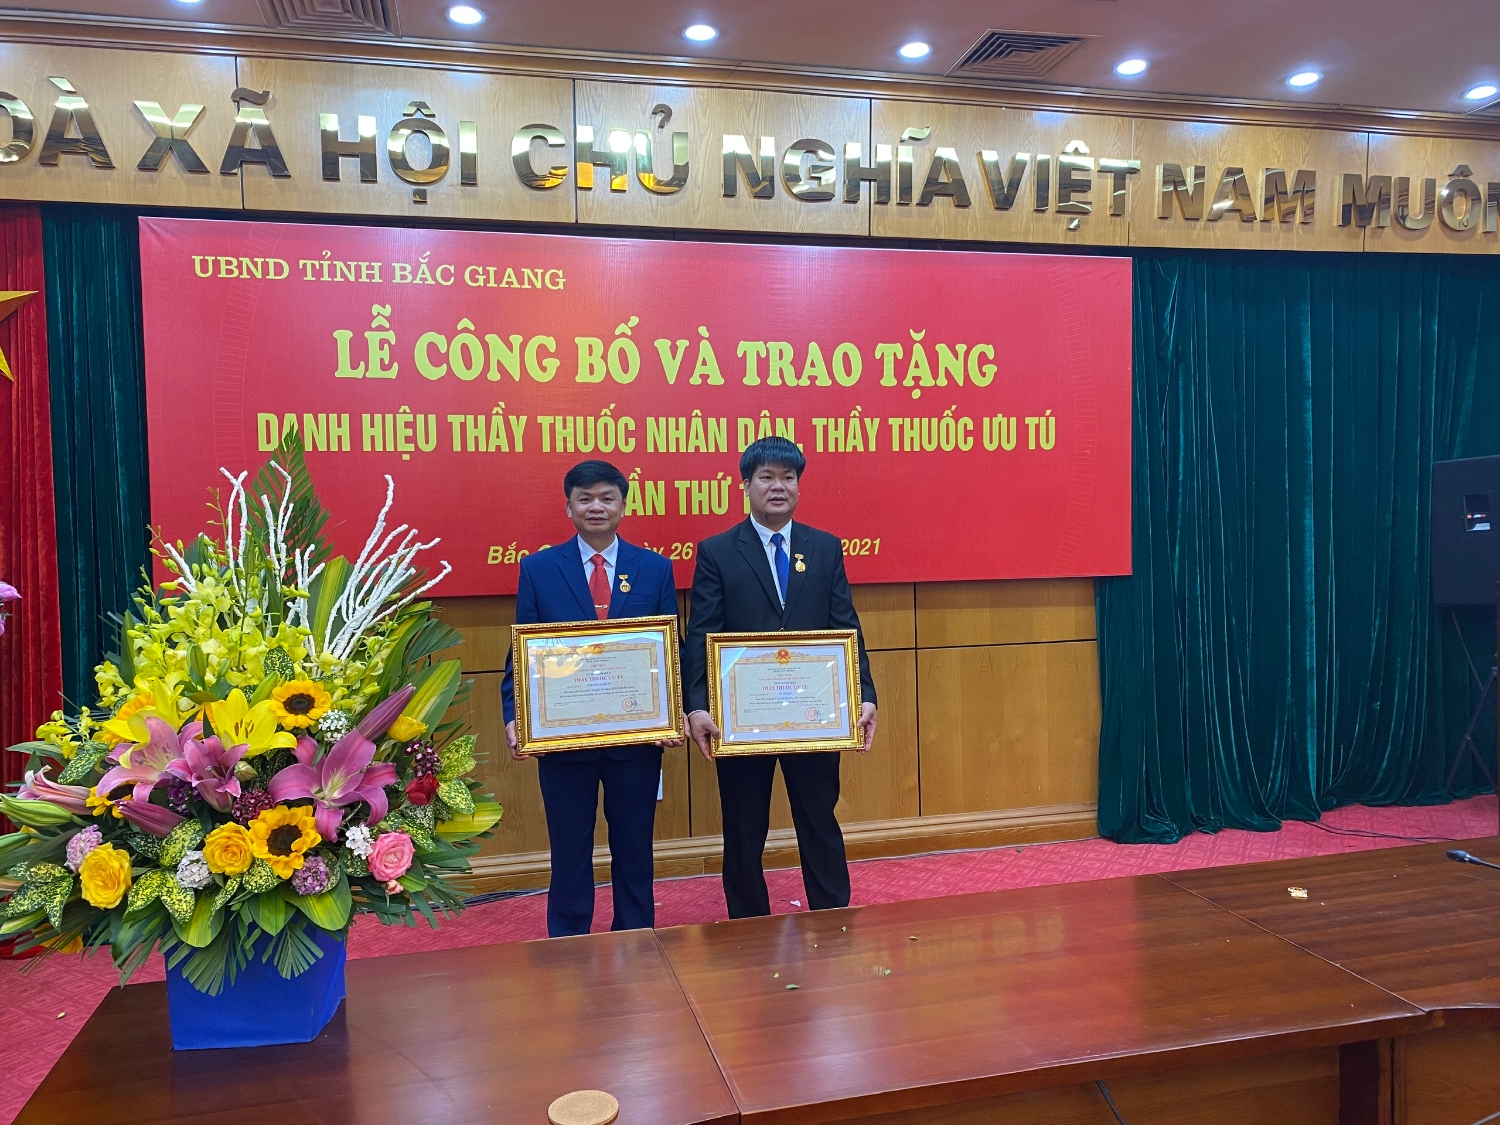 Trung tâm Y tế huyện Yên Dũng vinh dự được nhận danh hiệu "Thầy thuốc Ưu tú”.